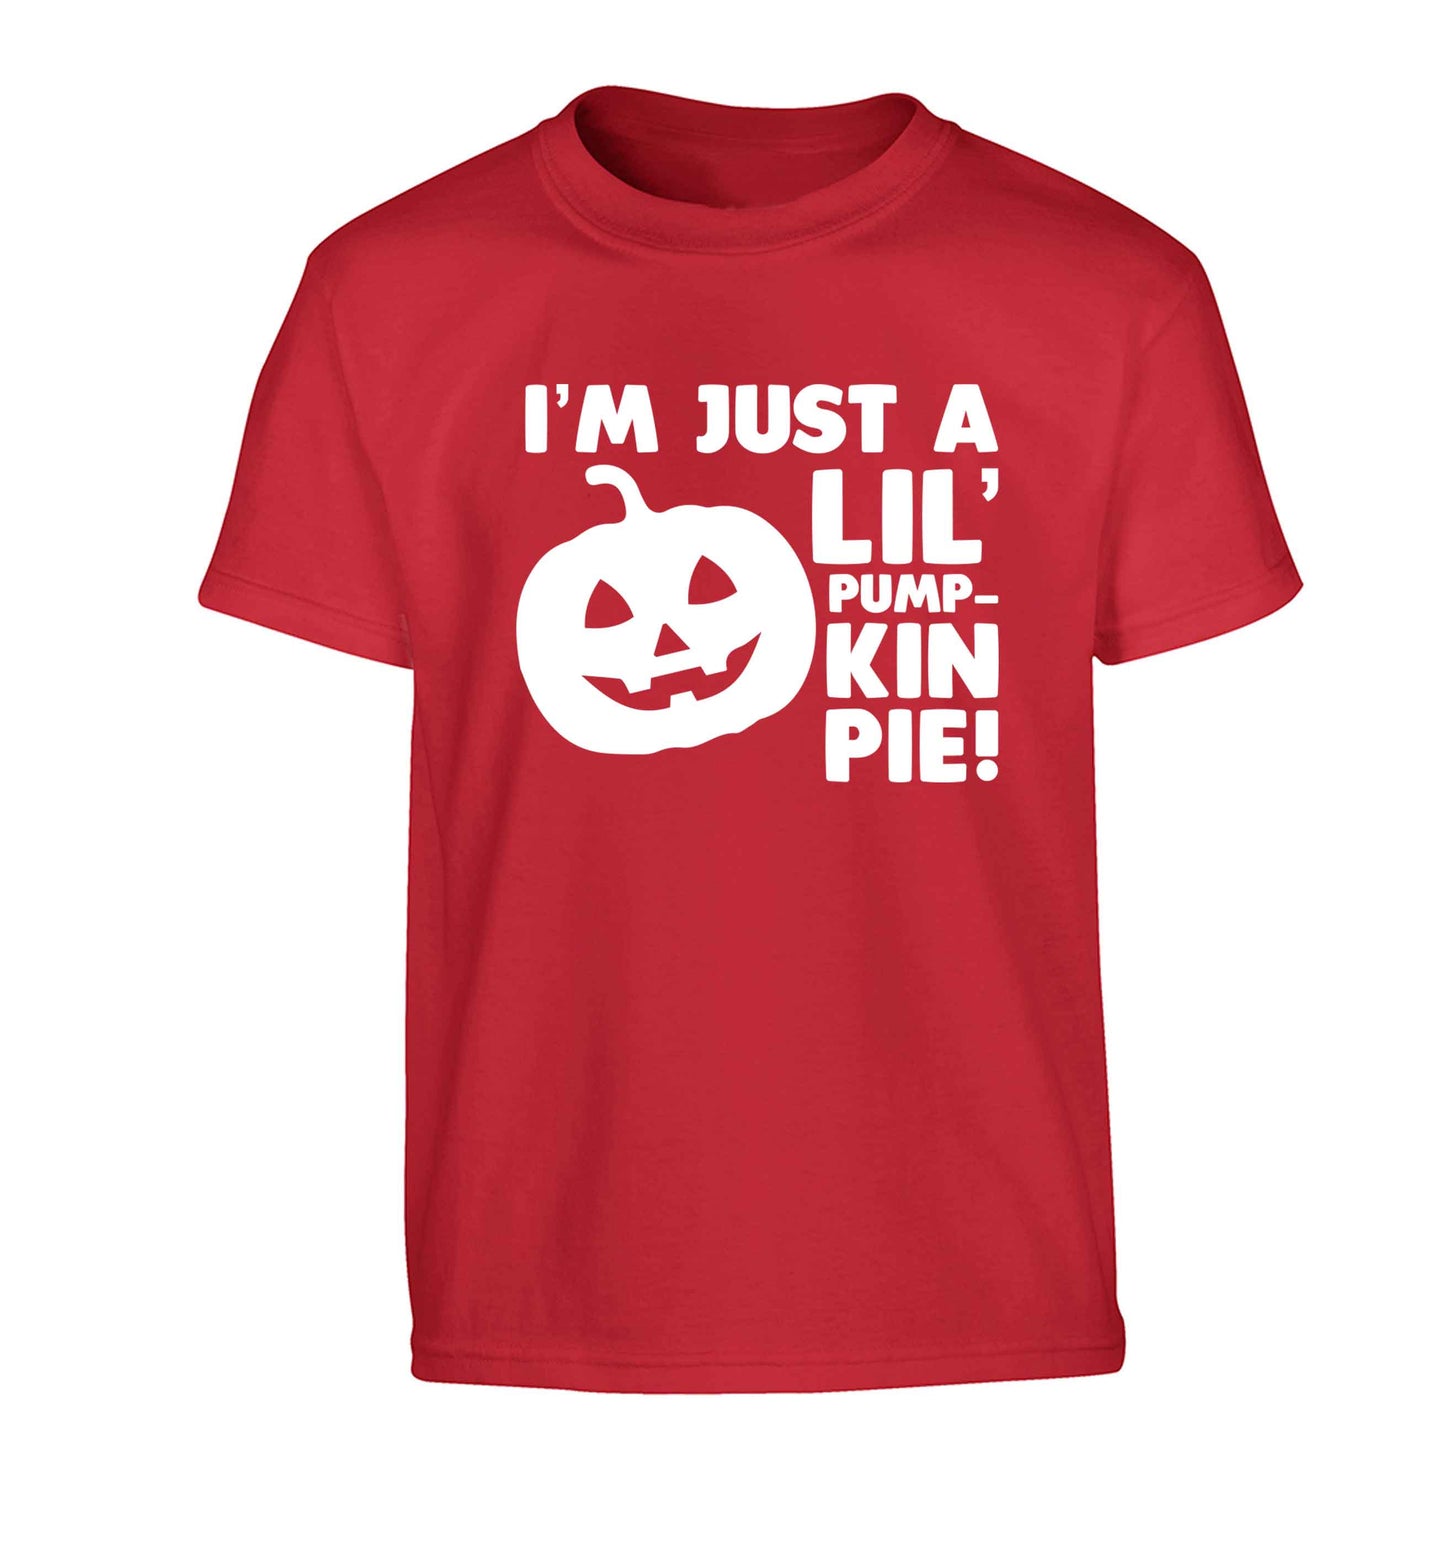 I'm just a lil' pumpkin pie Children's red Tshirt 12-13 Years